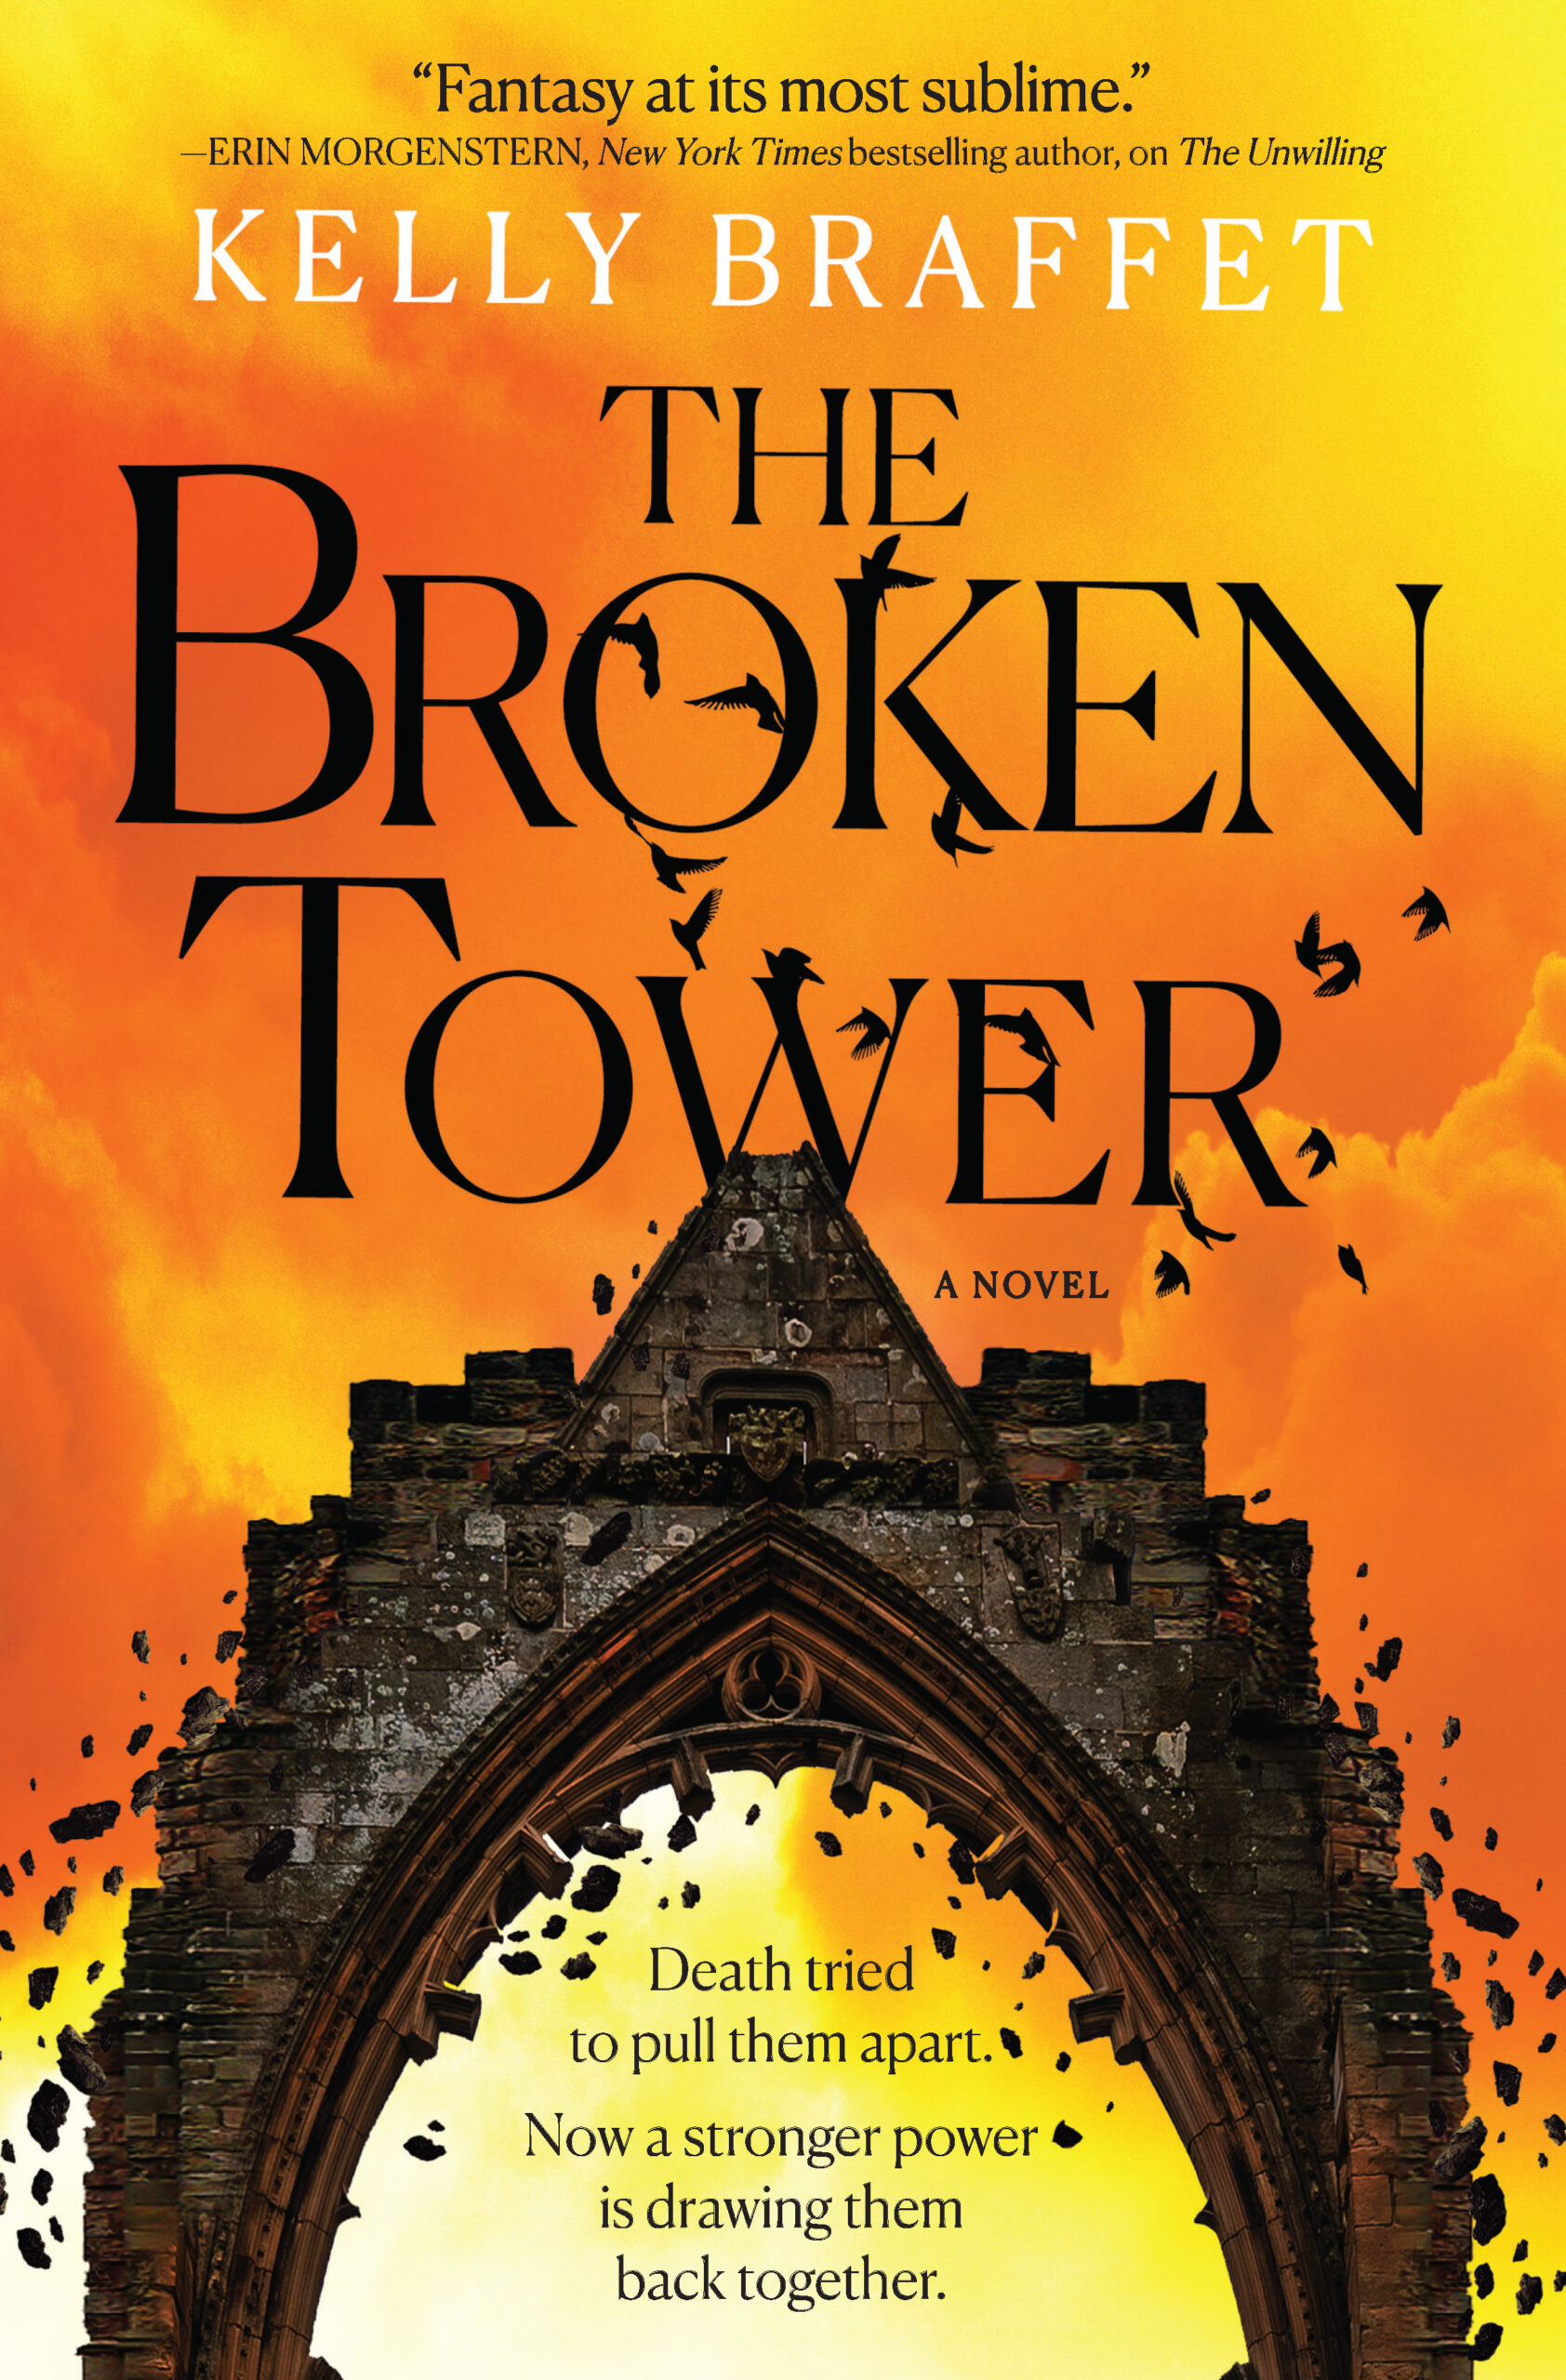 The Broken Tower, a novel by Kelly Braffet